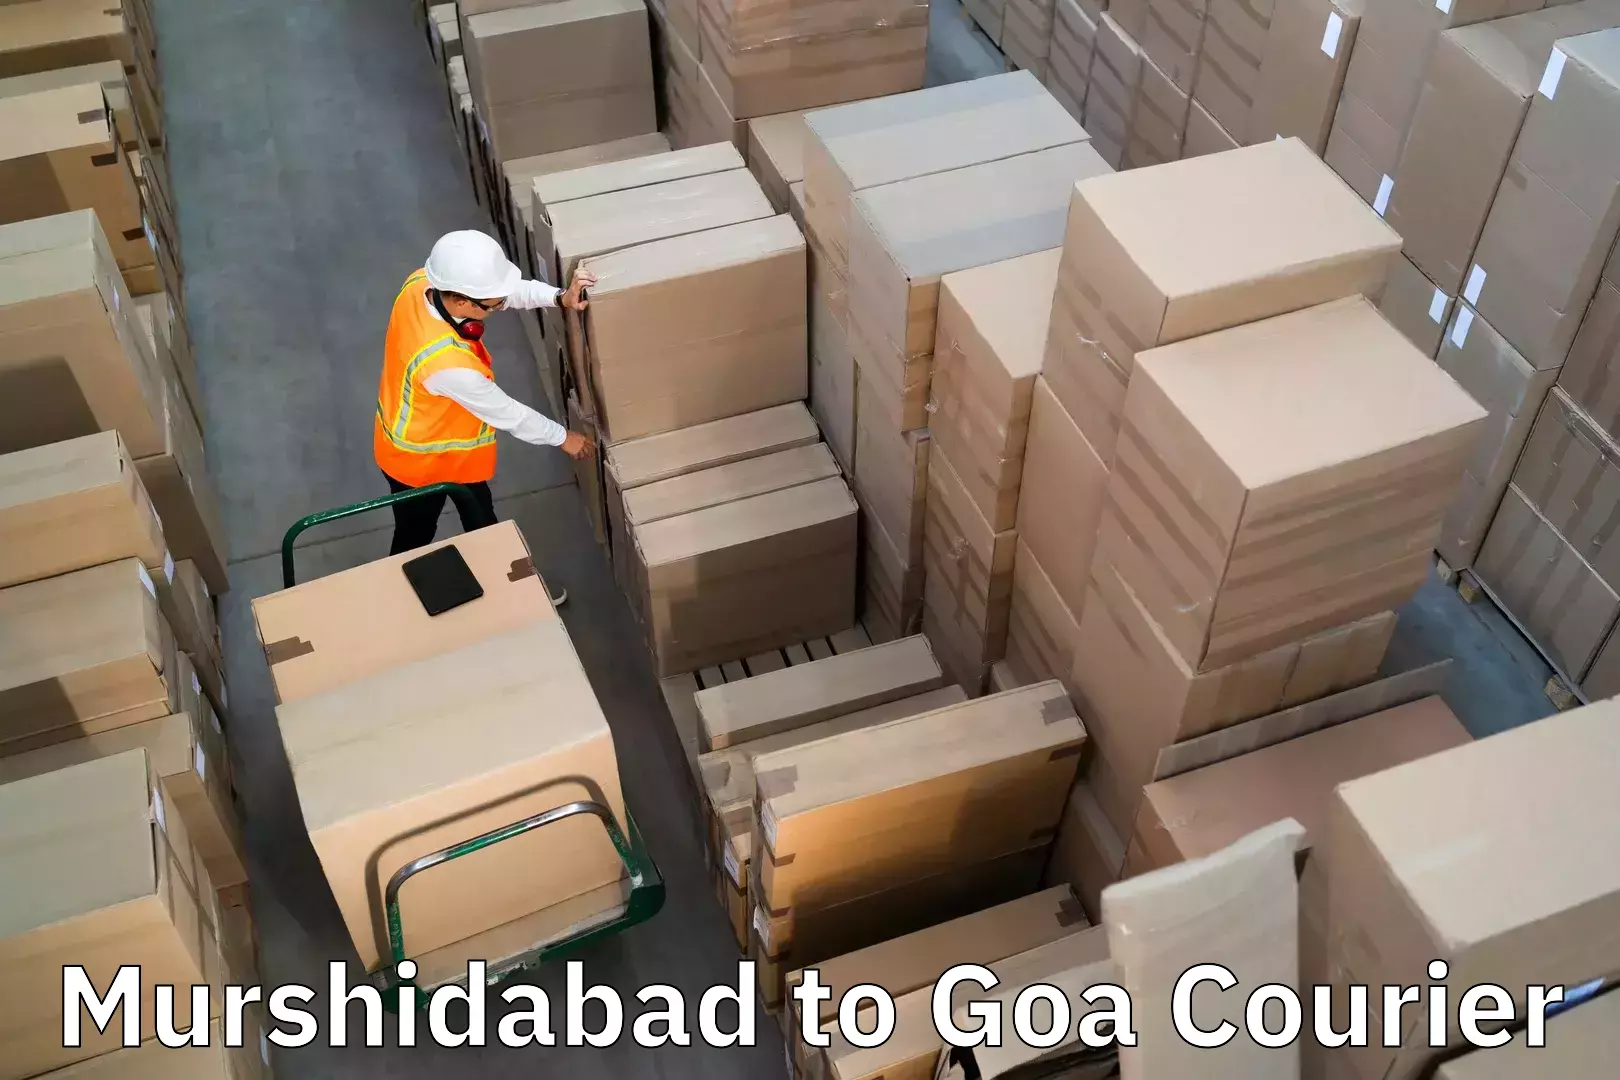 Luggage delivery estimate Murshidabad to IIT Goa